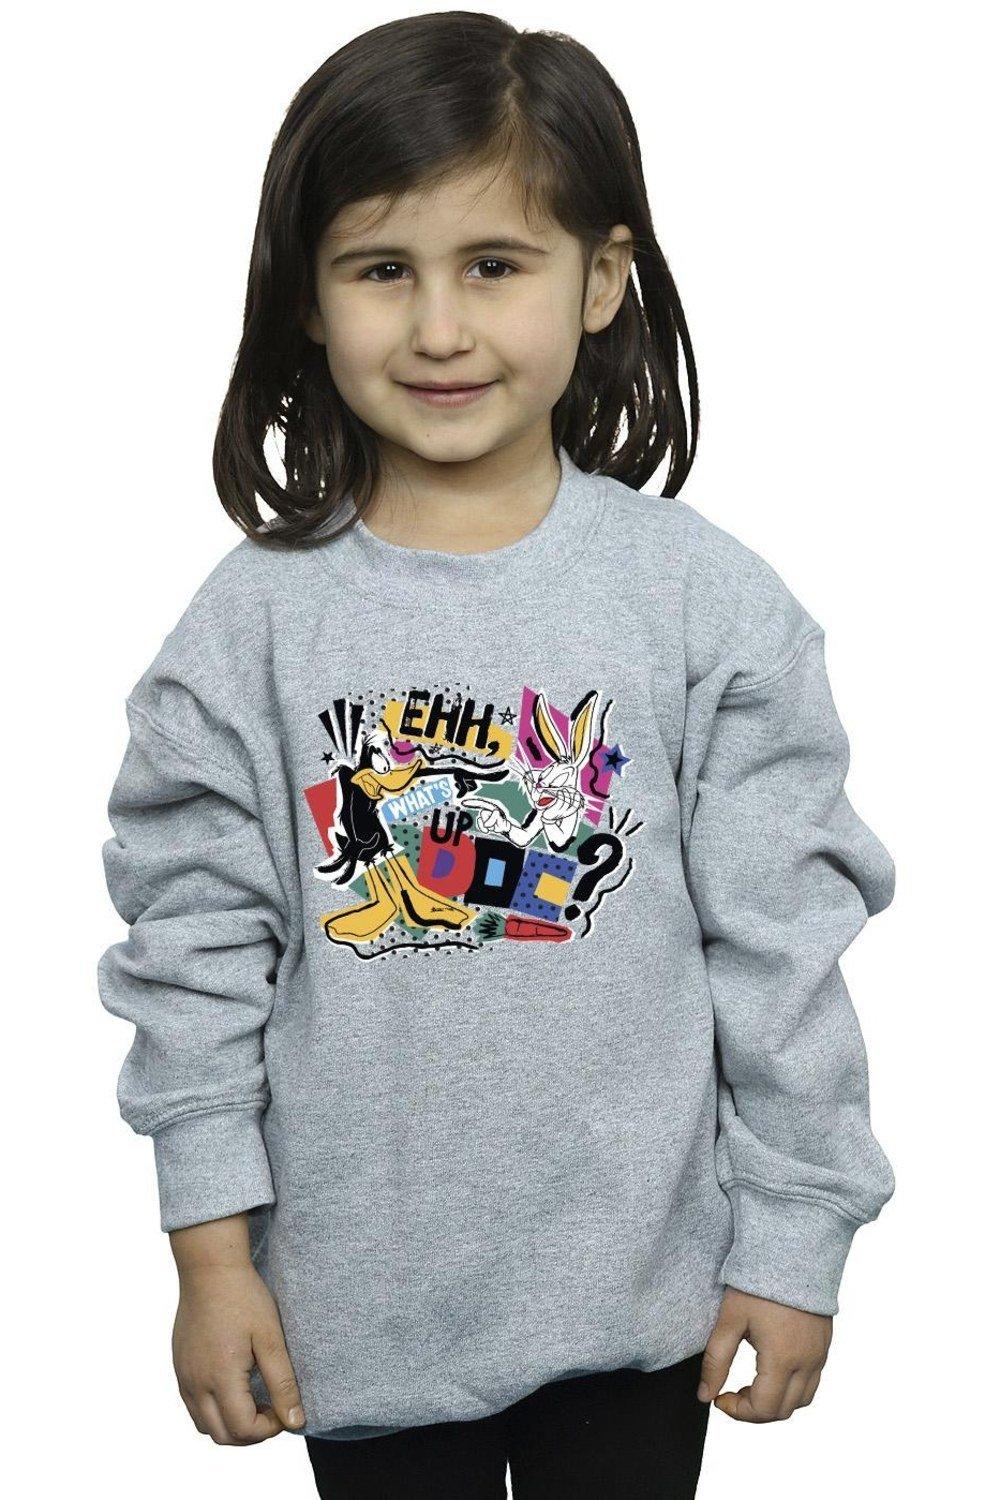 What’s Up Doc Pop Art Sweatshirt